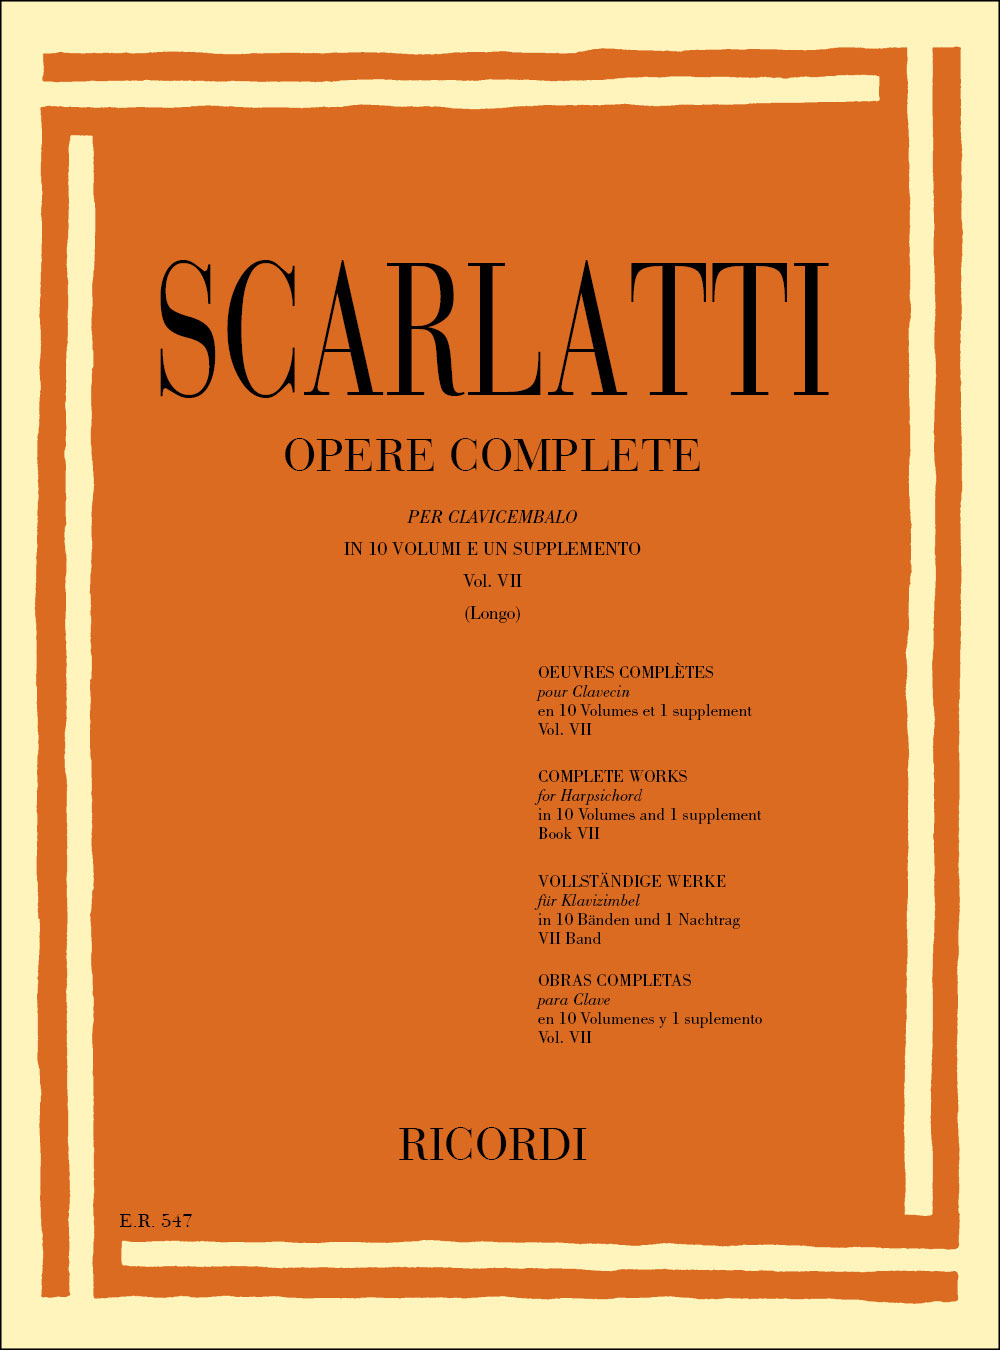 RICORDI SCARLATTI D. - OPERE COMPLETE PER CLAVICEMBALO - PIANO